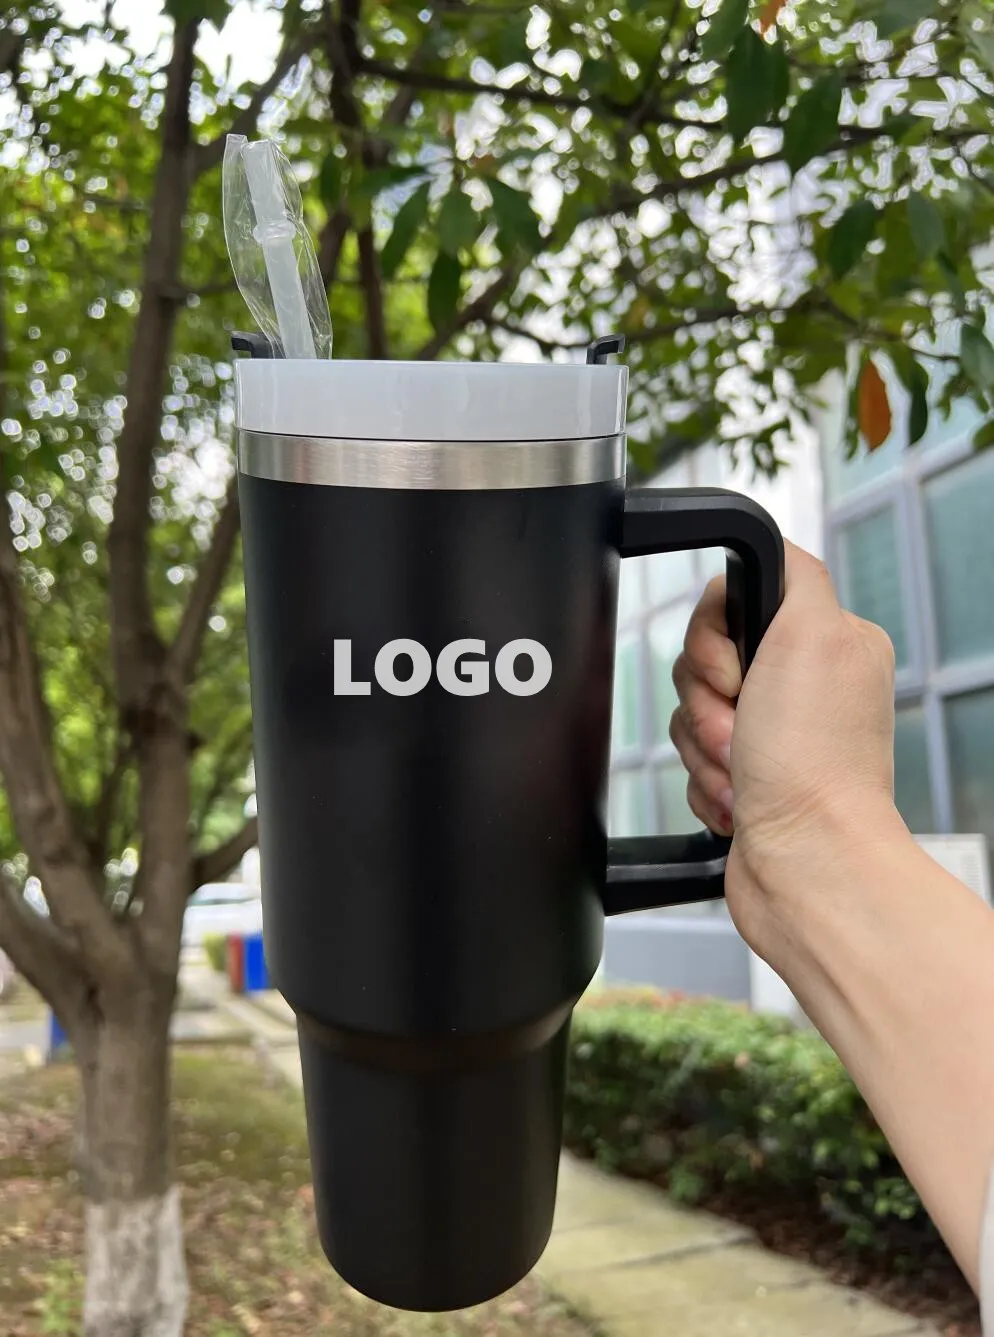 Mug en acier inoxydable avec paille et manchon de protection – 500